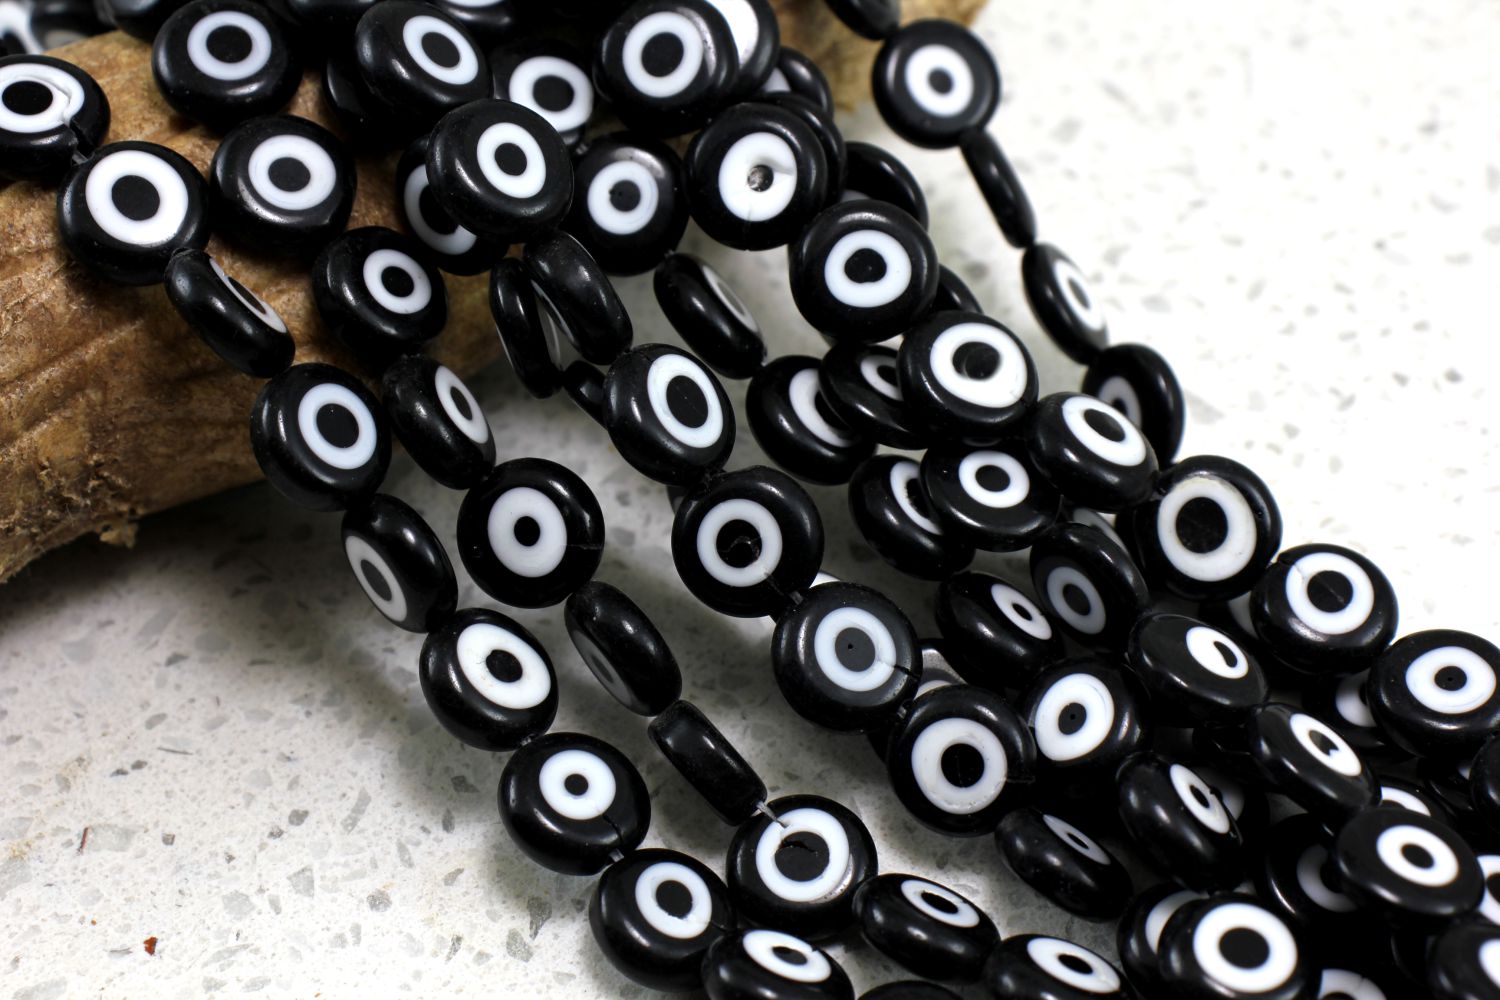 12mm-evil-eye-glass-beads